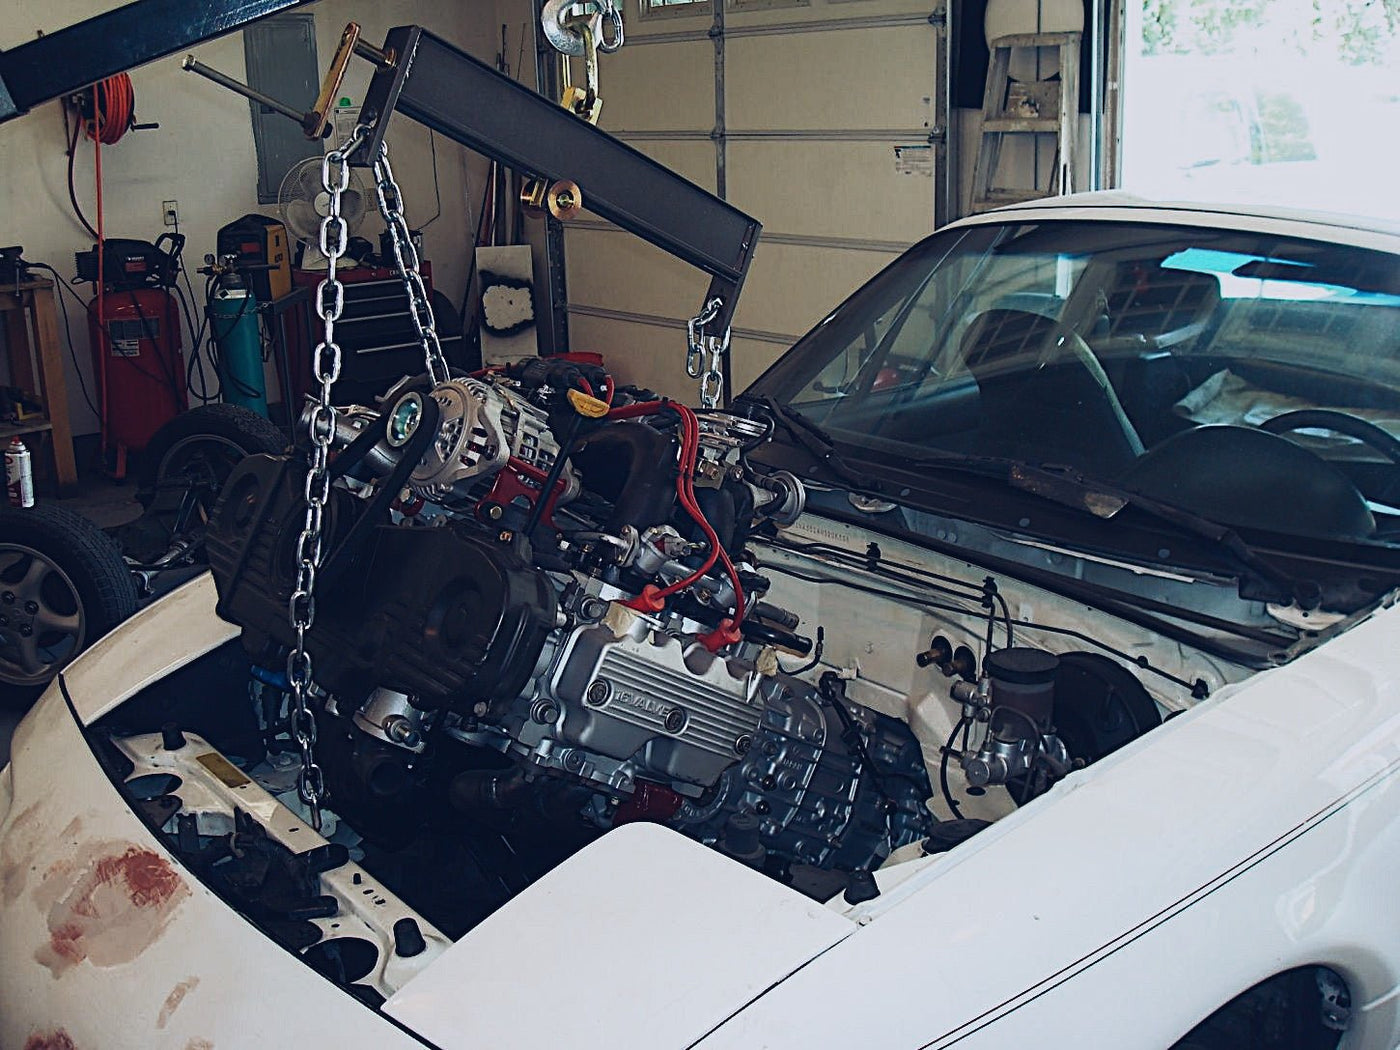 Subaru ej20 2.0l engine being swapped.